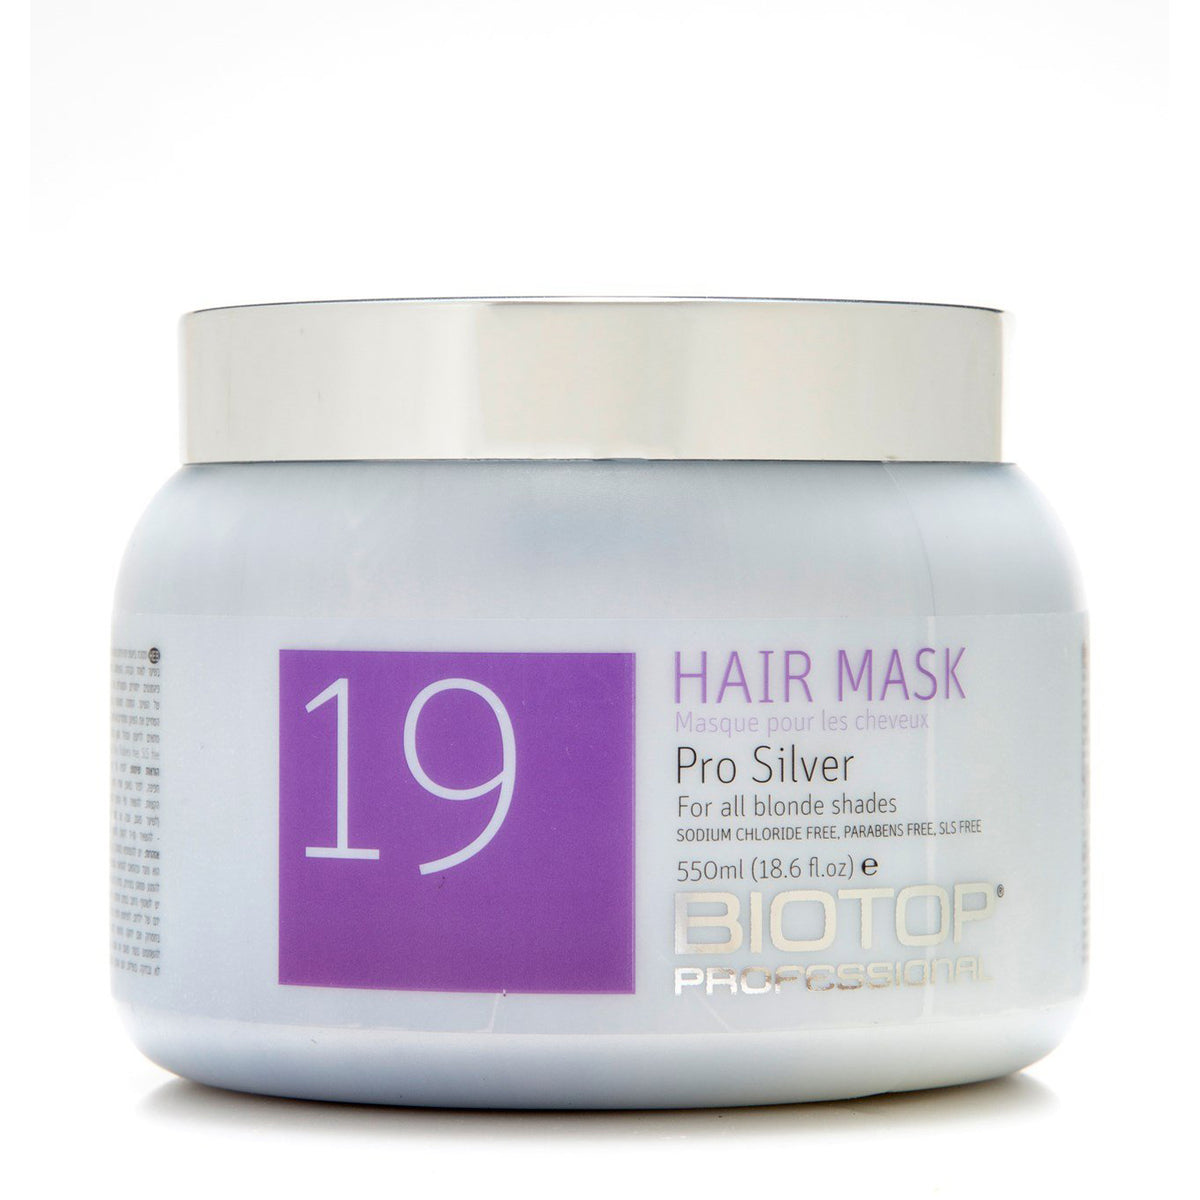 Biotop - 19 Pro Silver Hair Mask 550ml